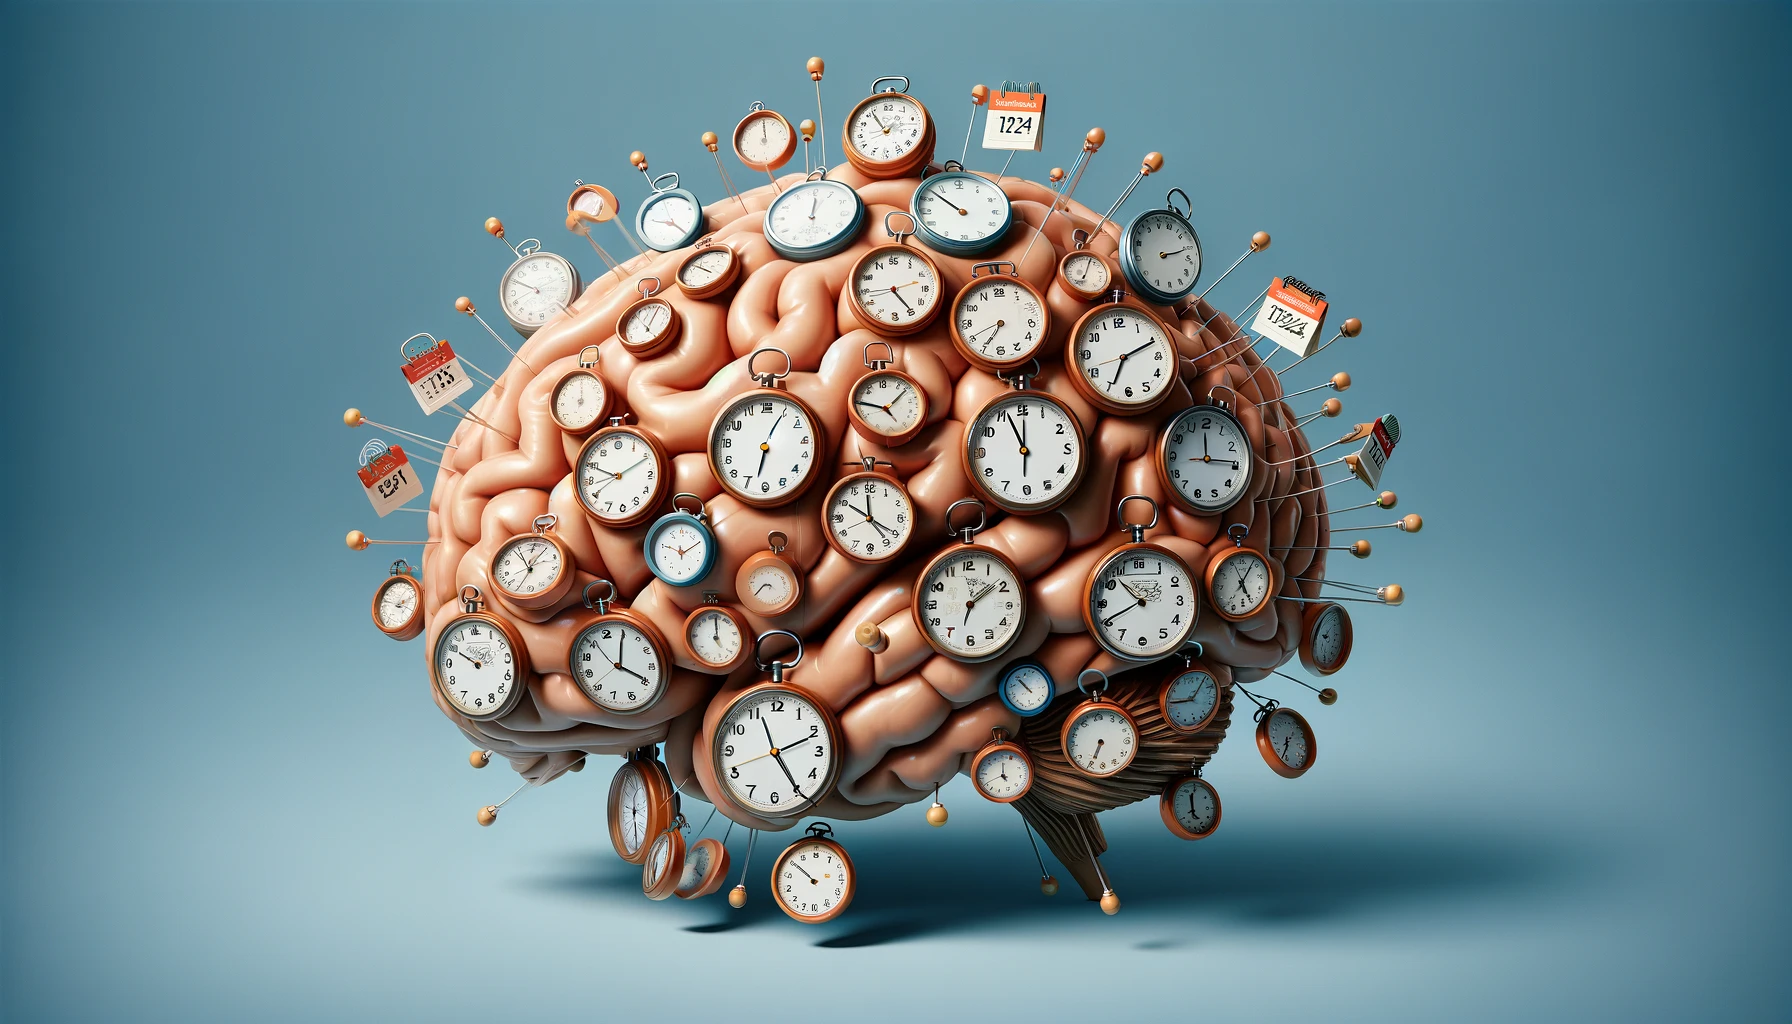 muestra un cerebro humano superpuesto con calendarios y relojes, simbolizando la habilidad de recordar cada día vivido